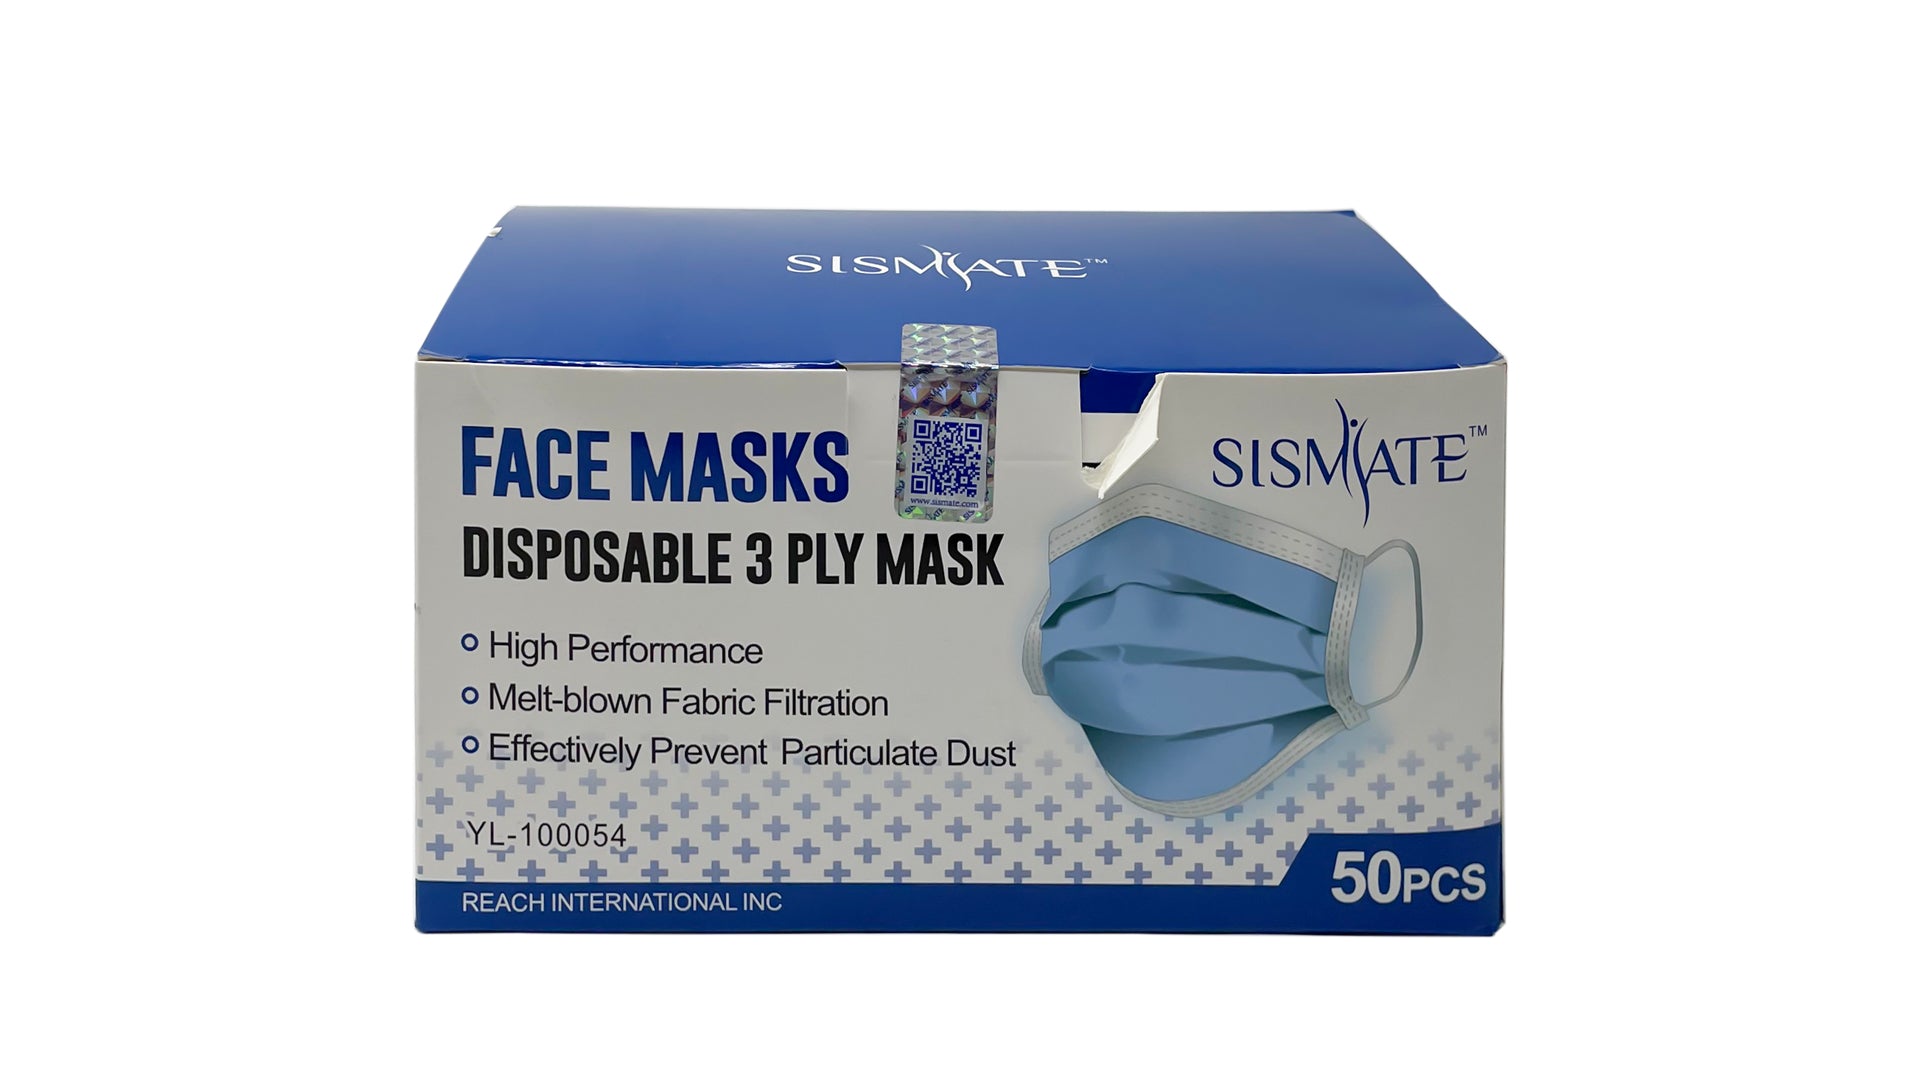 Unbranded Paper Mask Skin Masks for sale